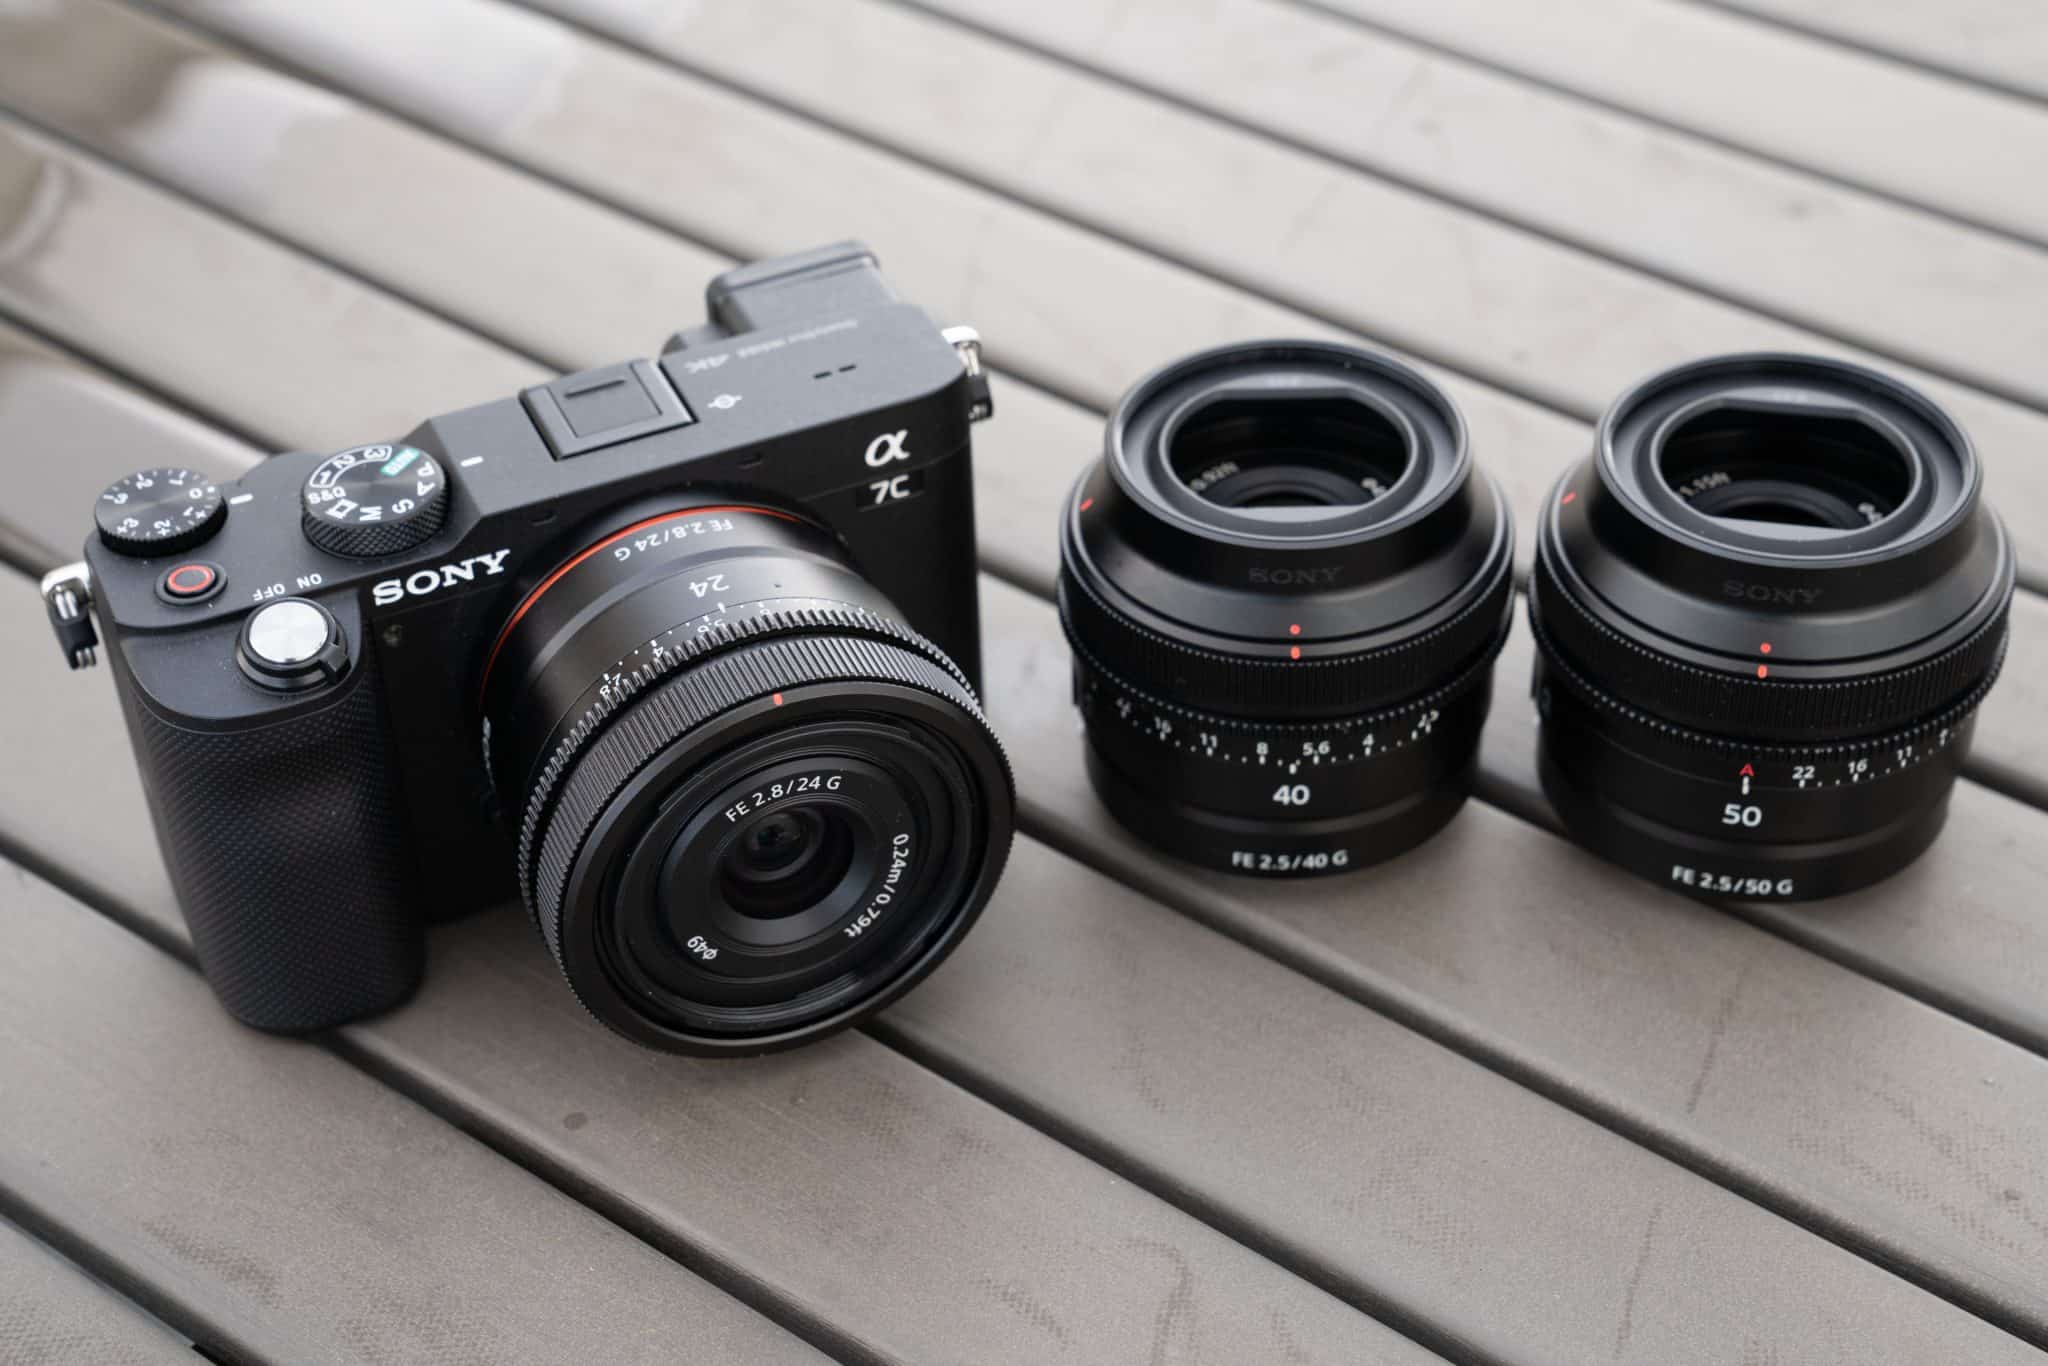 Sony ra mắt bộ ba ống kính một tiêu cự 24mm F2.8 G, 40mm F2.5 G và 50mm F2.5 G